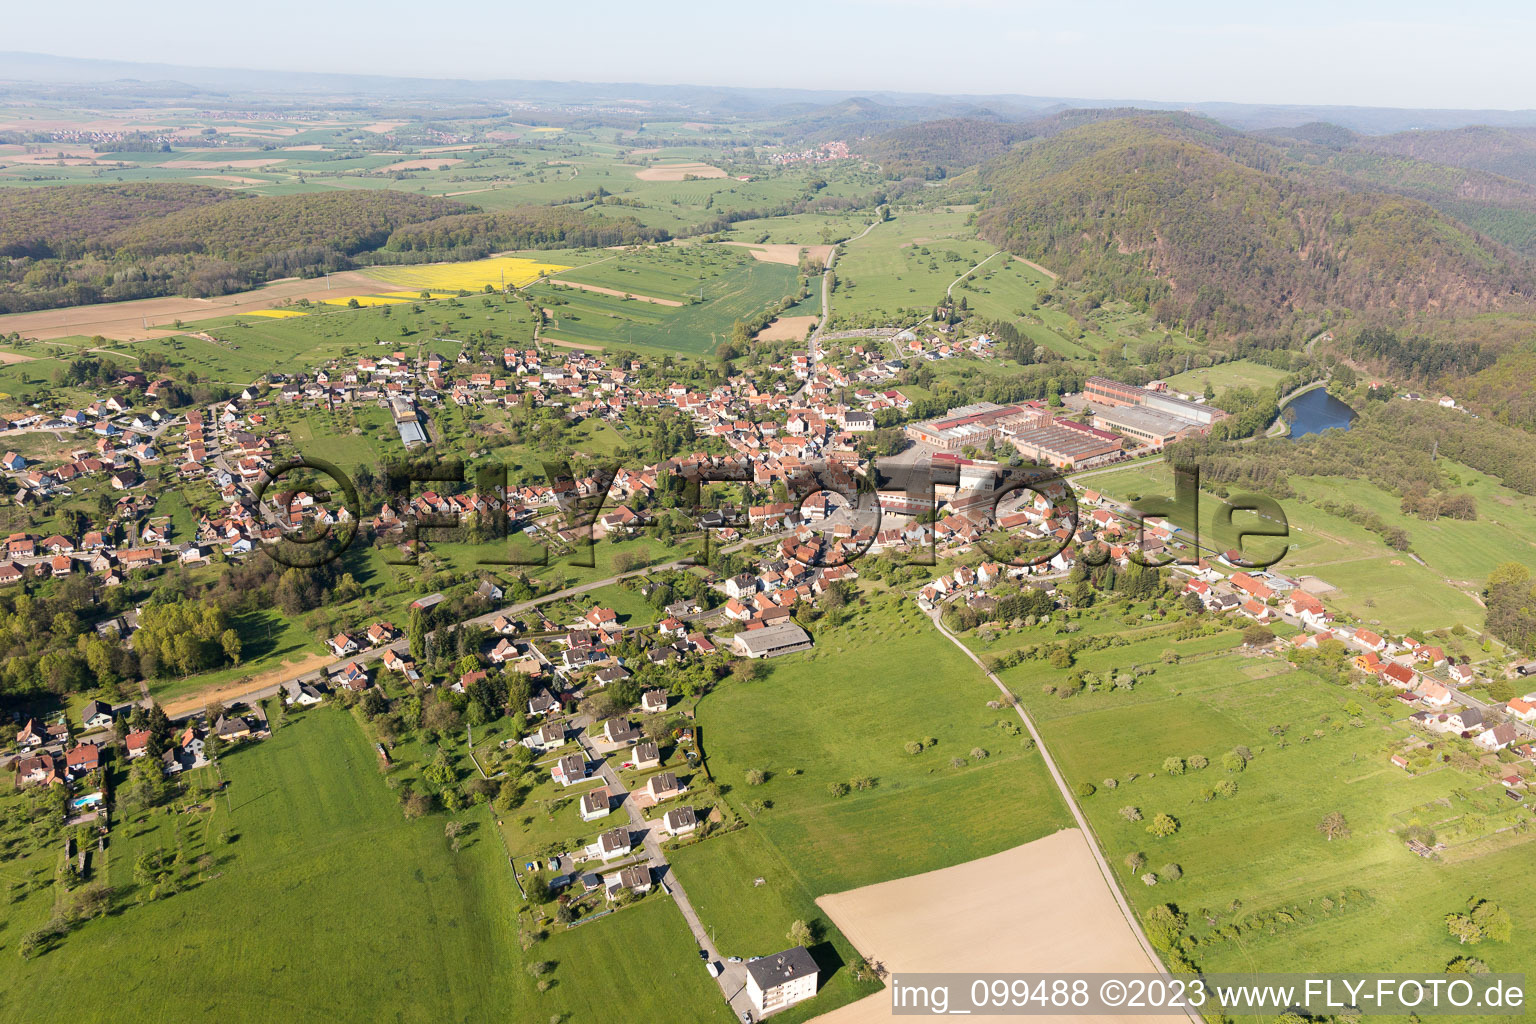 Zinswiller dans le département Bas Rhin, France vu d'un drone